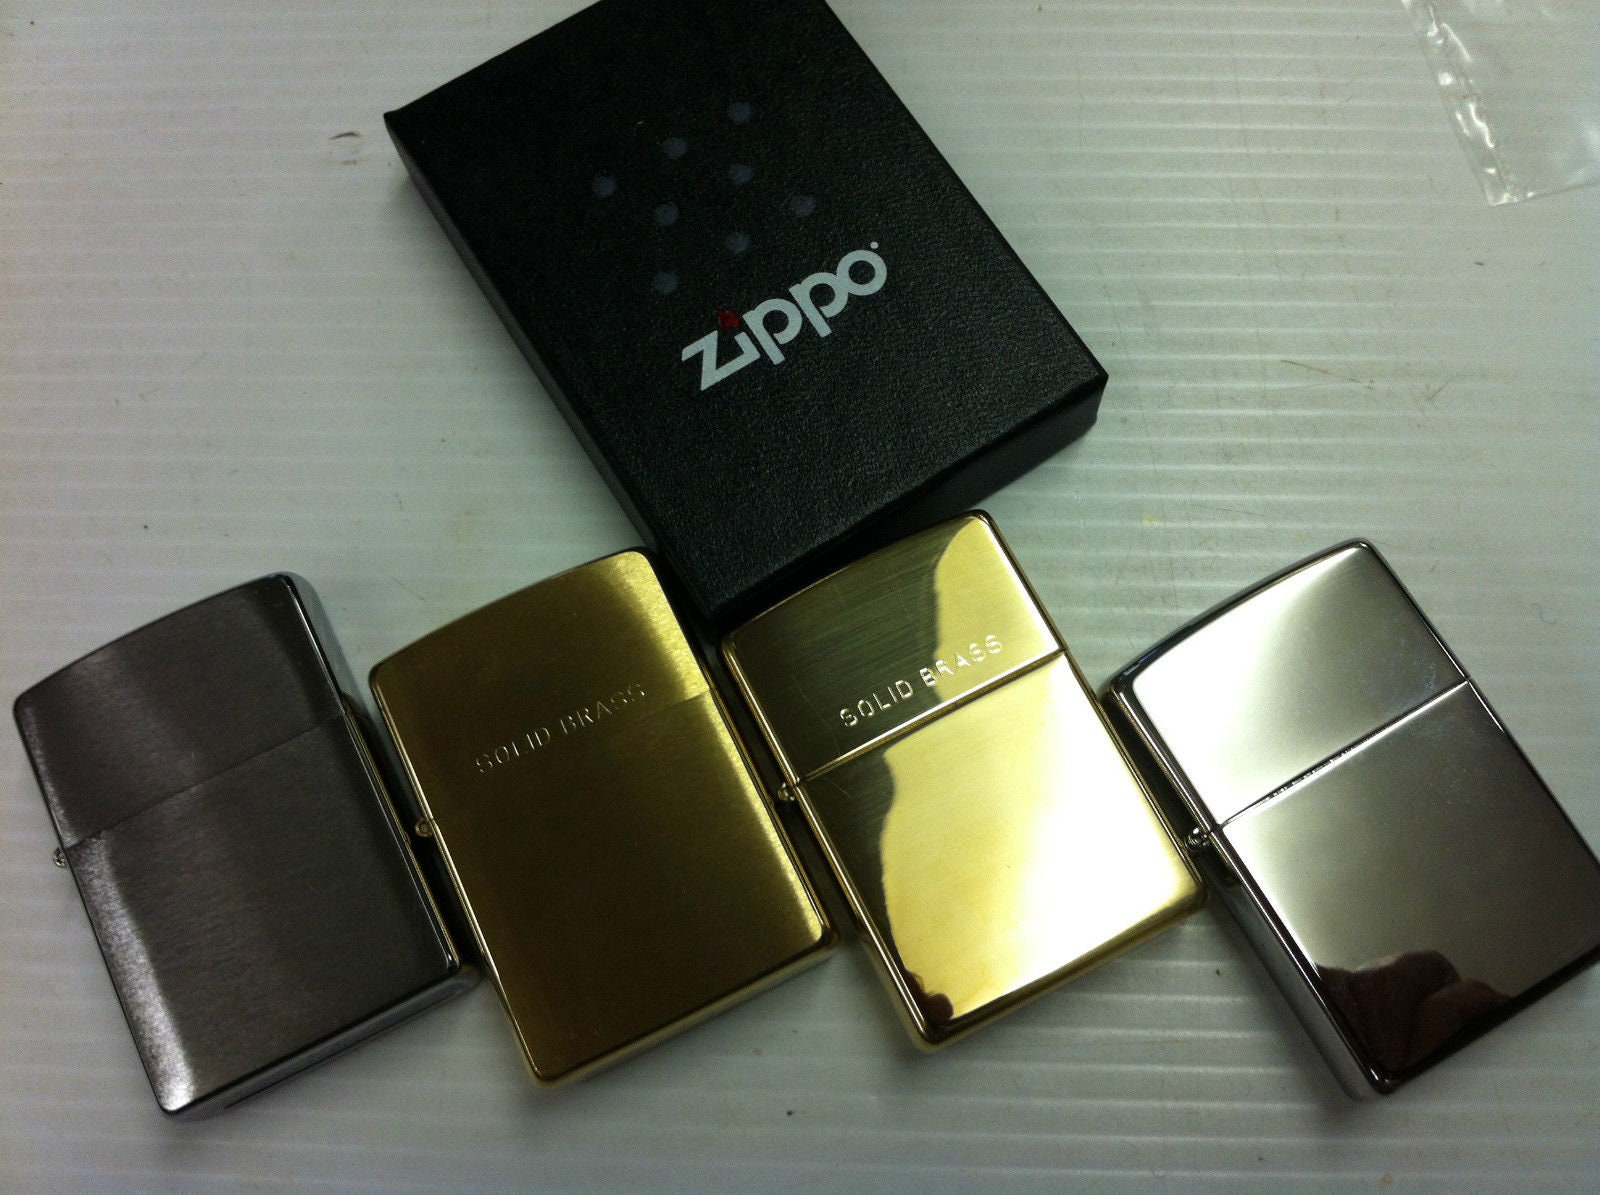 Encendedores Zippo personalizados, grabado gratuito, entrega rápida y  gratuita. Zippo genuino: cromo pulido y cepillado, latón pulido y cepillado  -  México